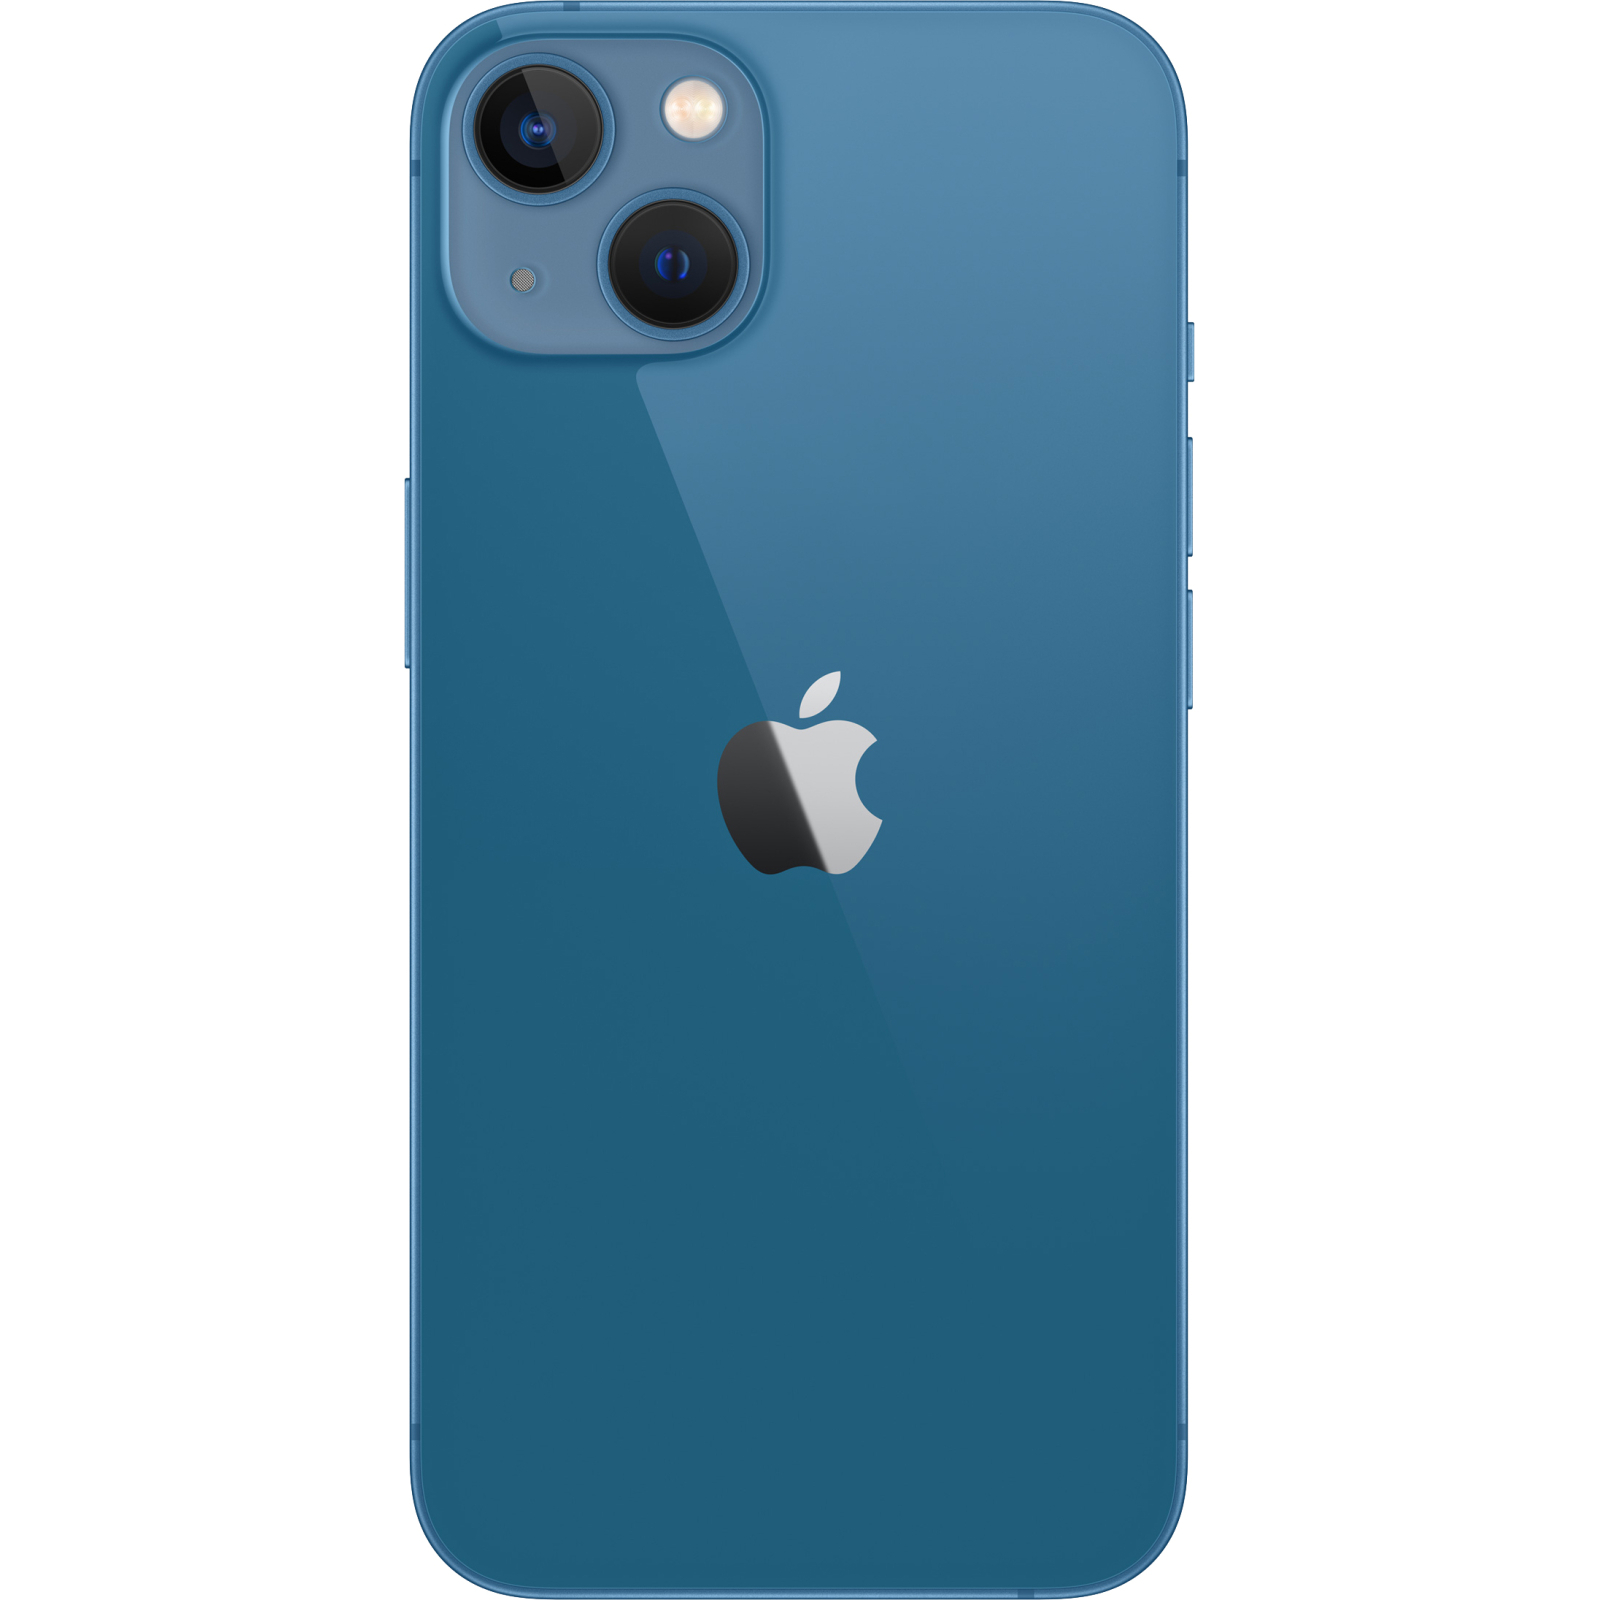 Мобильный телефон Apple iPhone 13 128GB Blue (MLPK3) изображение 2